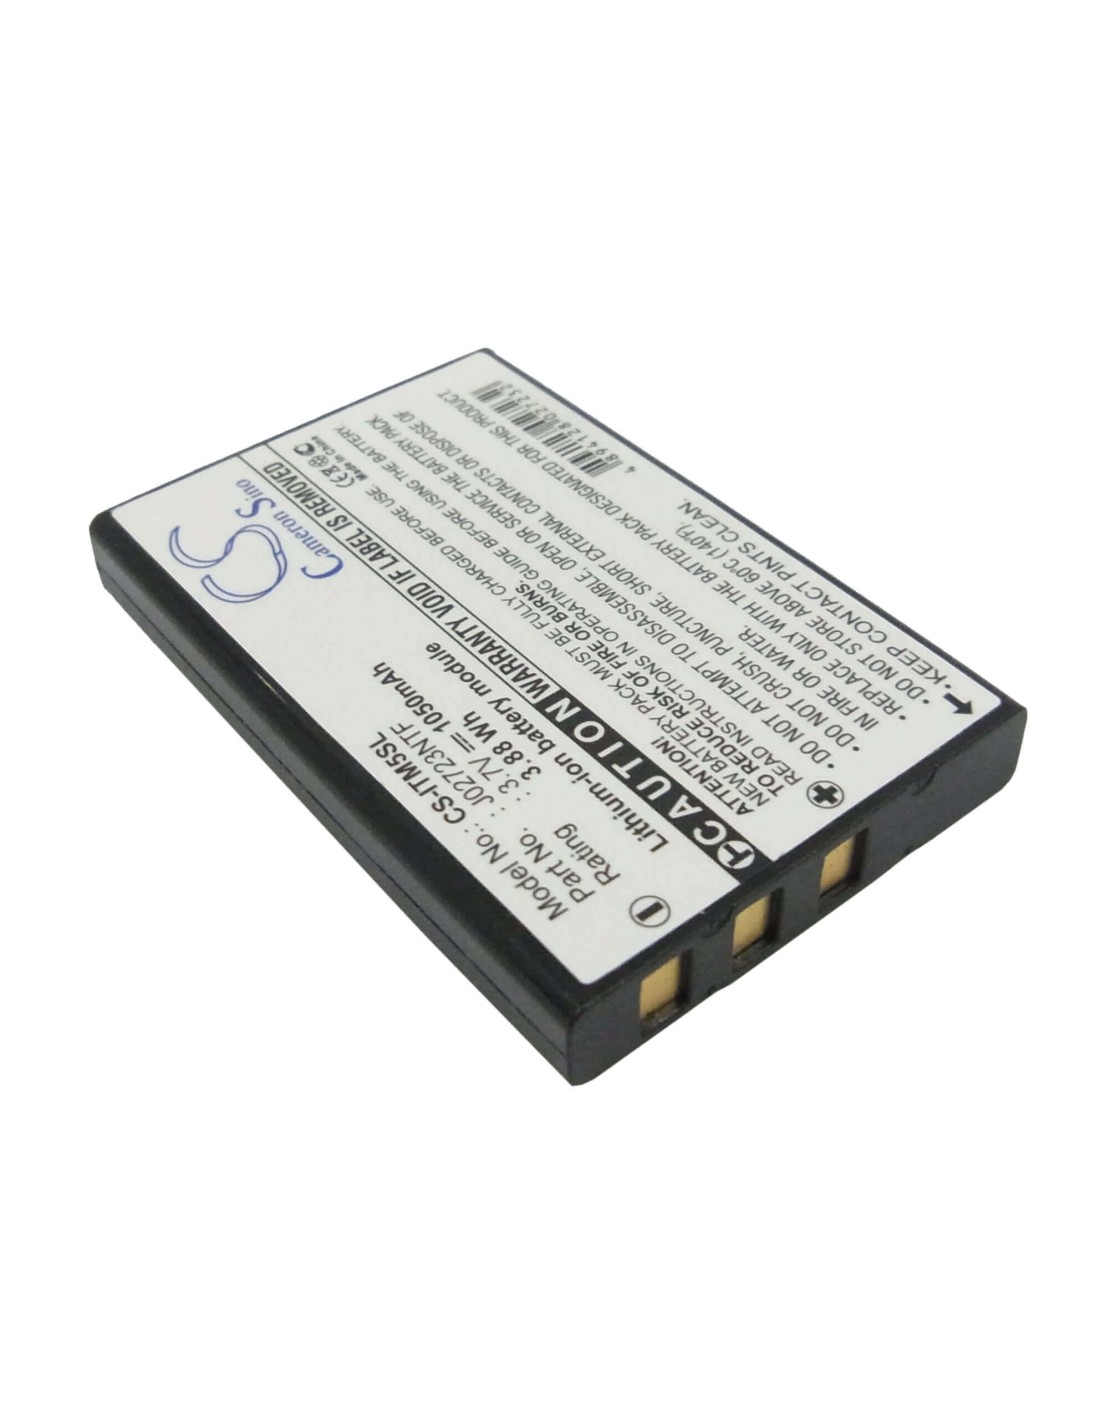 Battery for I.trek M5, M5 Bt Gps, 3.7V, 1050mAh - 3.89Wh